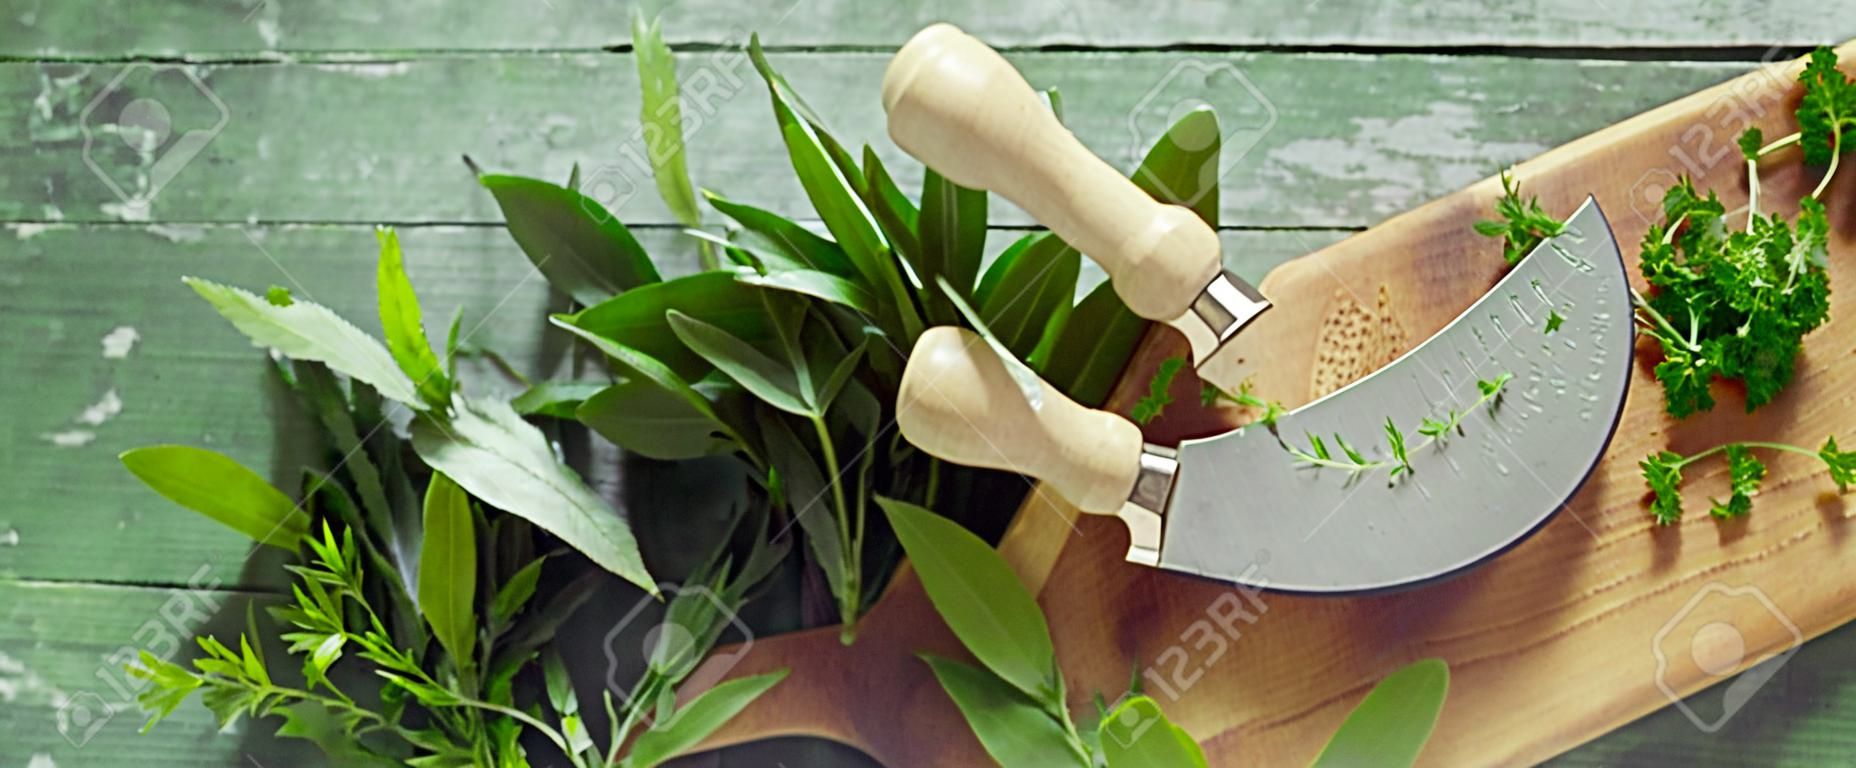 Panorama rustique ou vintage sur bois vert marbré avec brins d'herbes fraîches assorties sur une planche de bois avec couteau mezzaluna pour hacher avec espace de copie